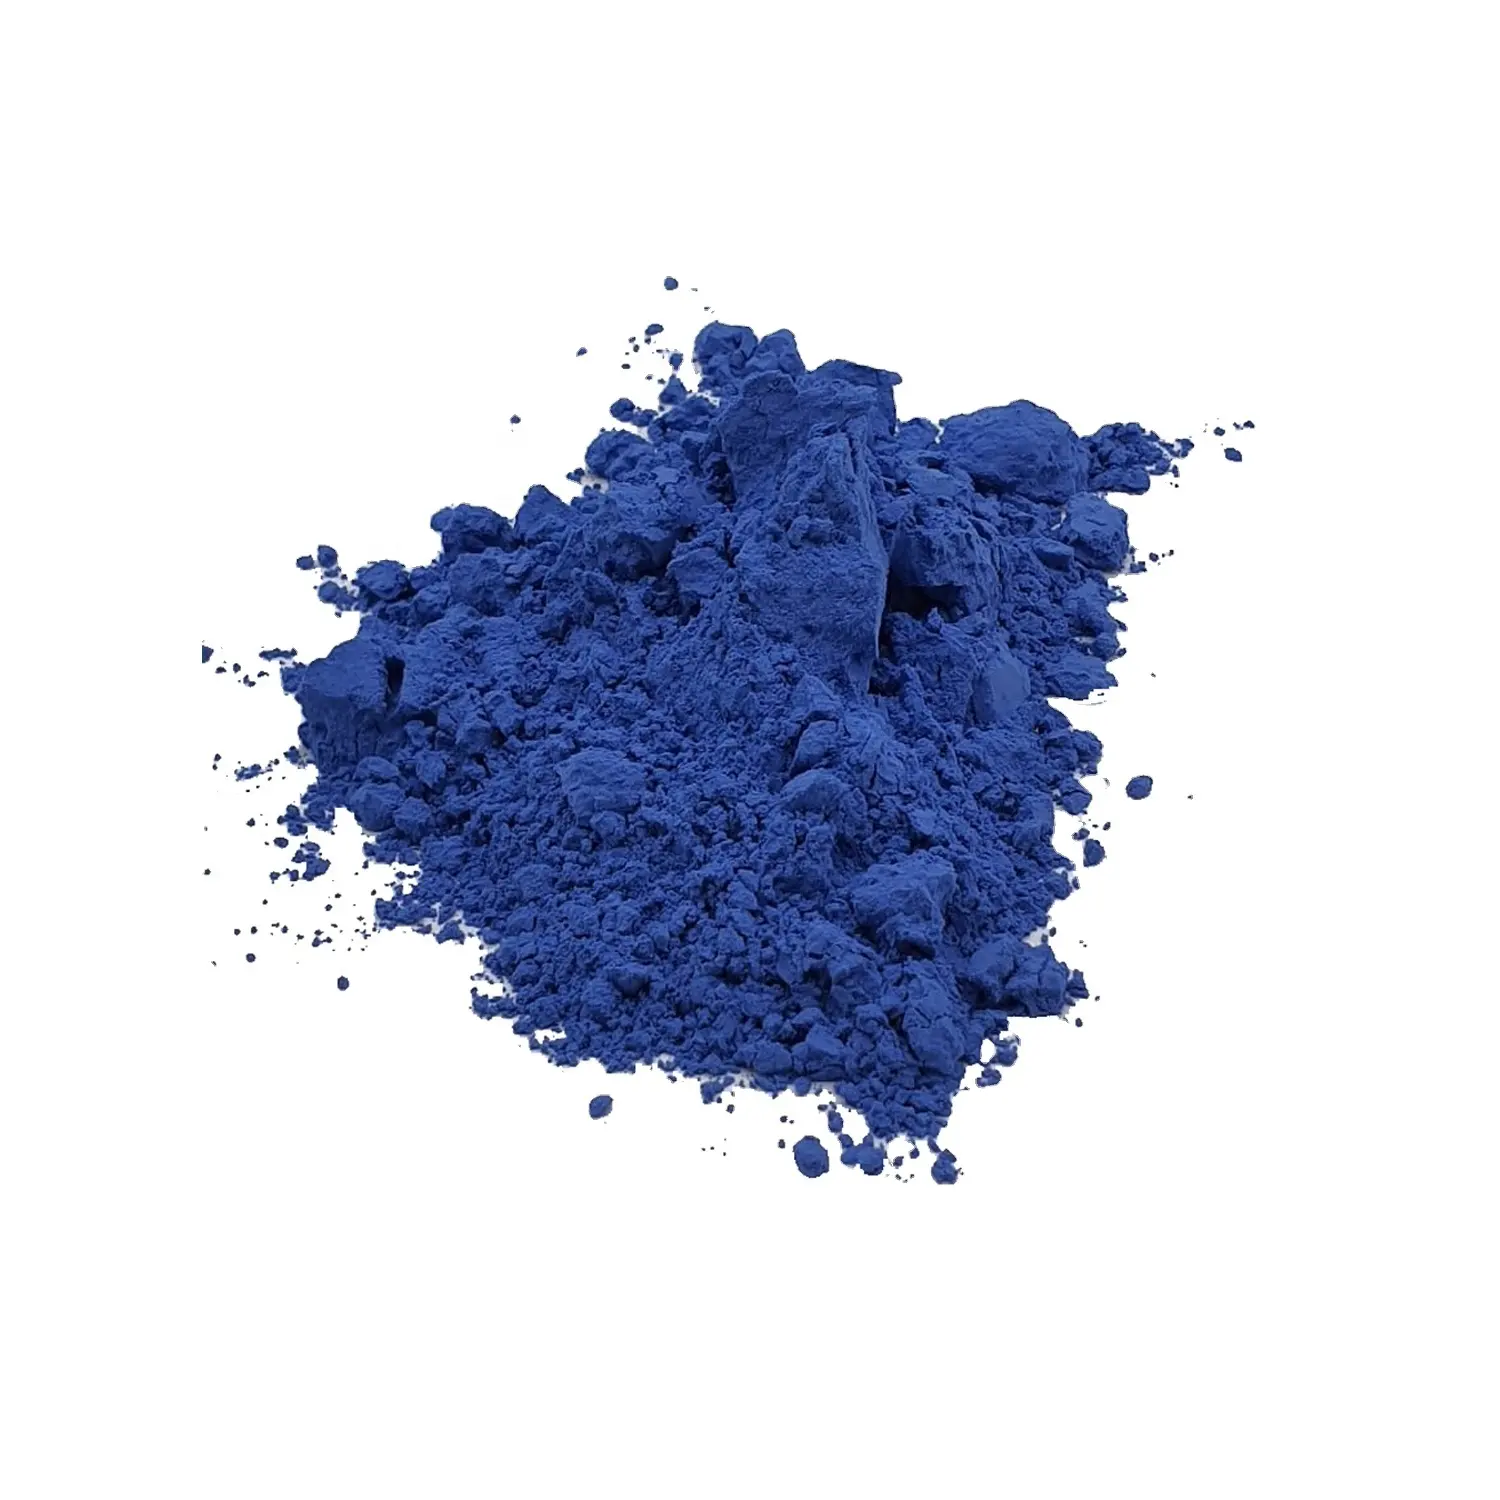 Pigmento de lapislázuli Natural 100% Original, pigmento de la mejor calidad para todo tipo de colores, piedra lapislázuli azul